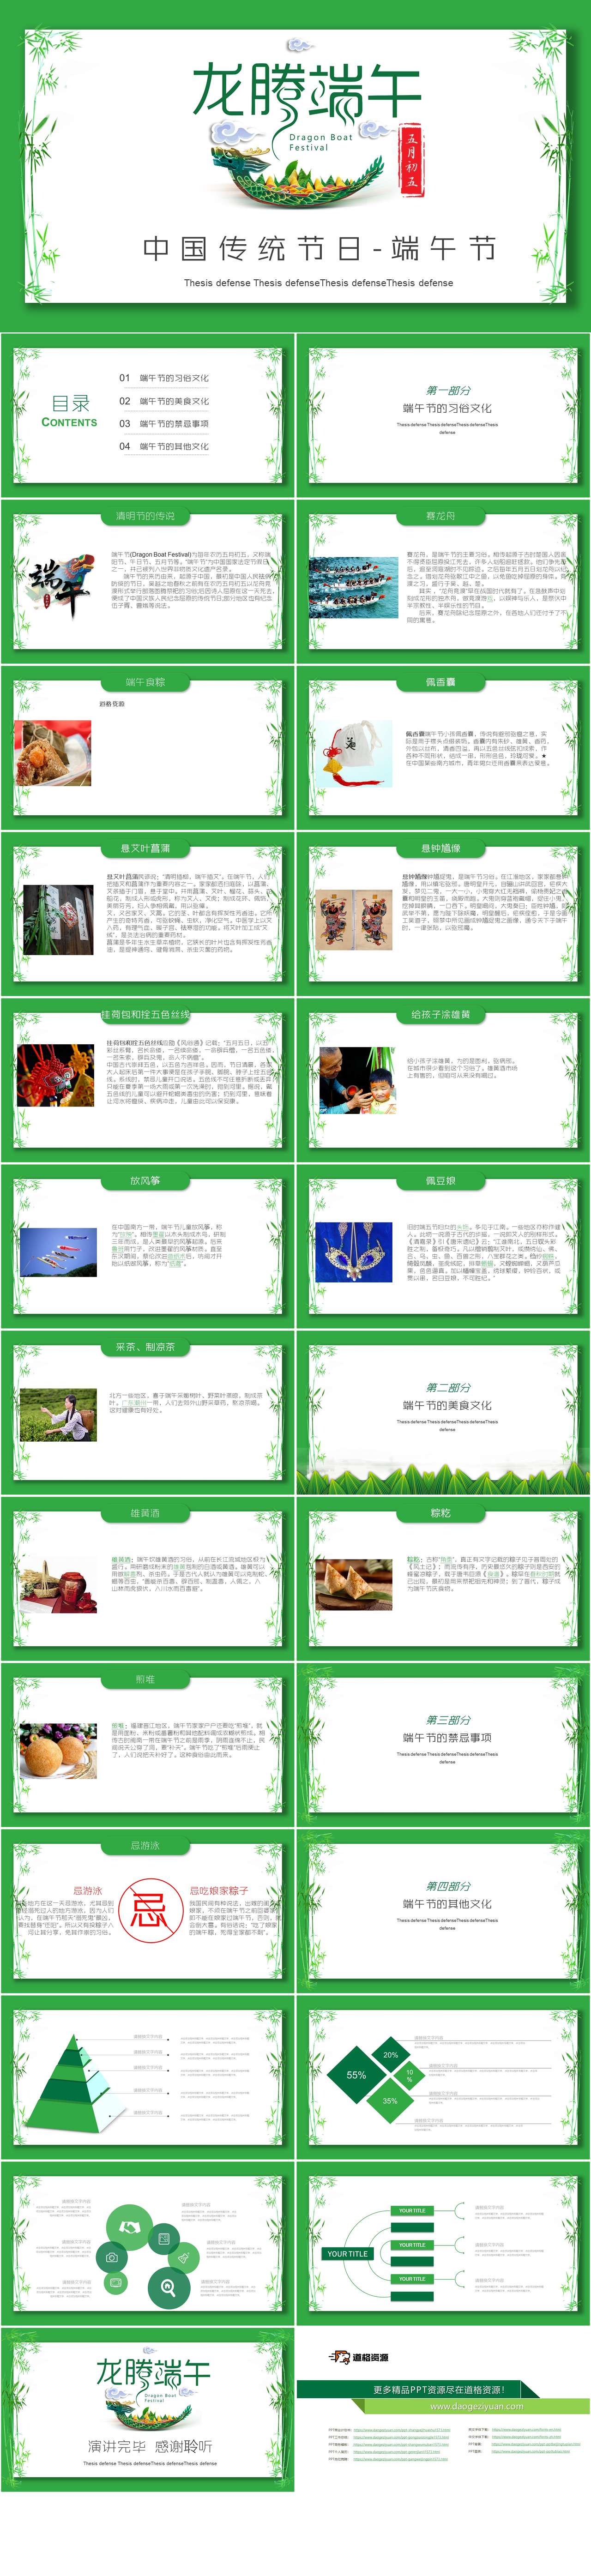 绿色创意传统节日端午节PPT模板（2）